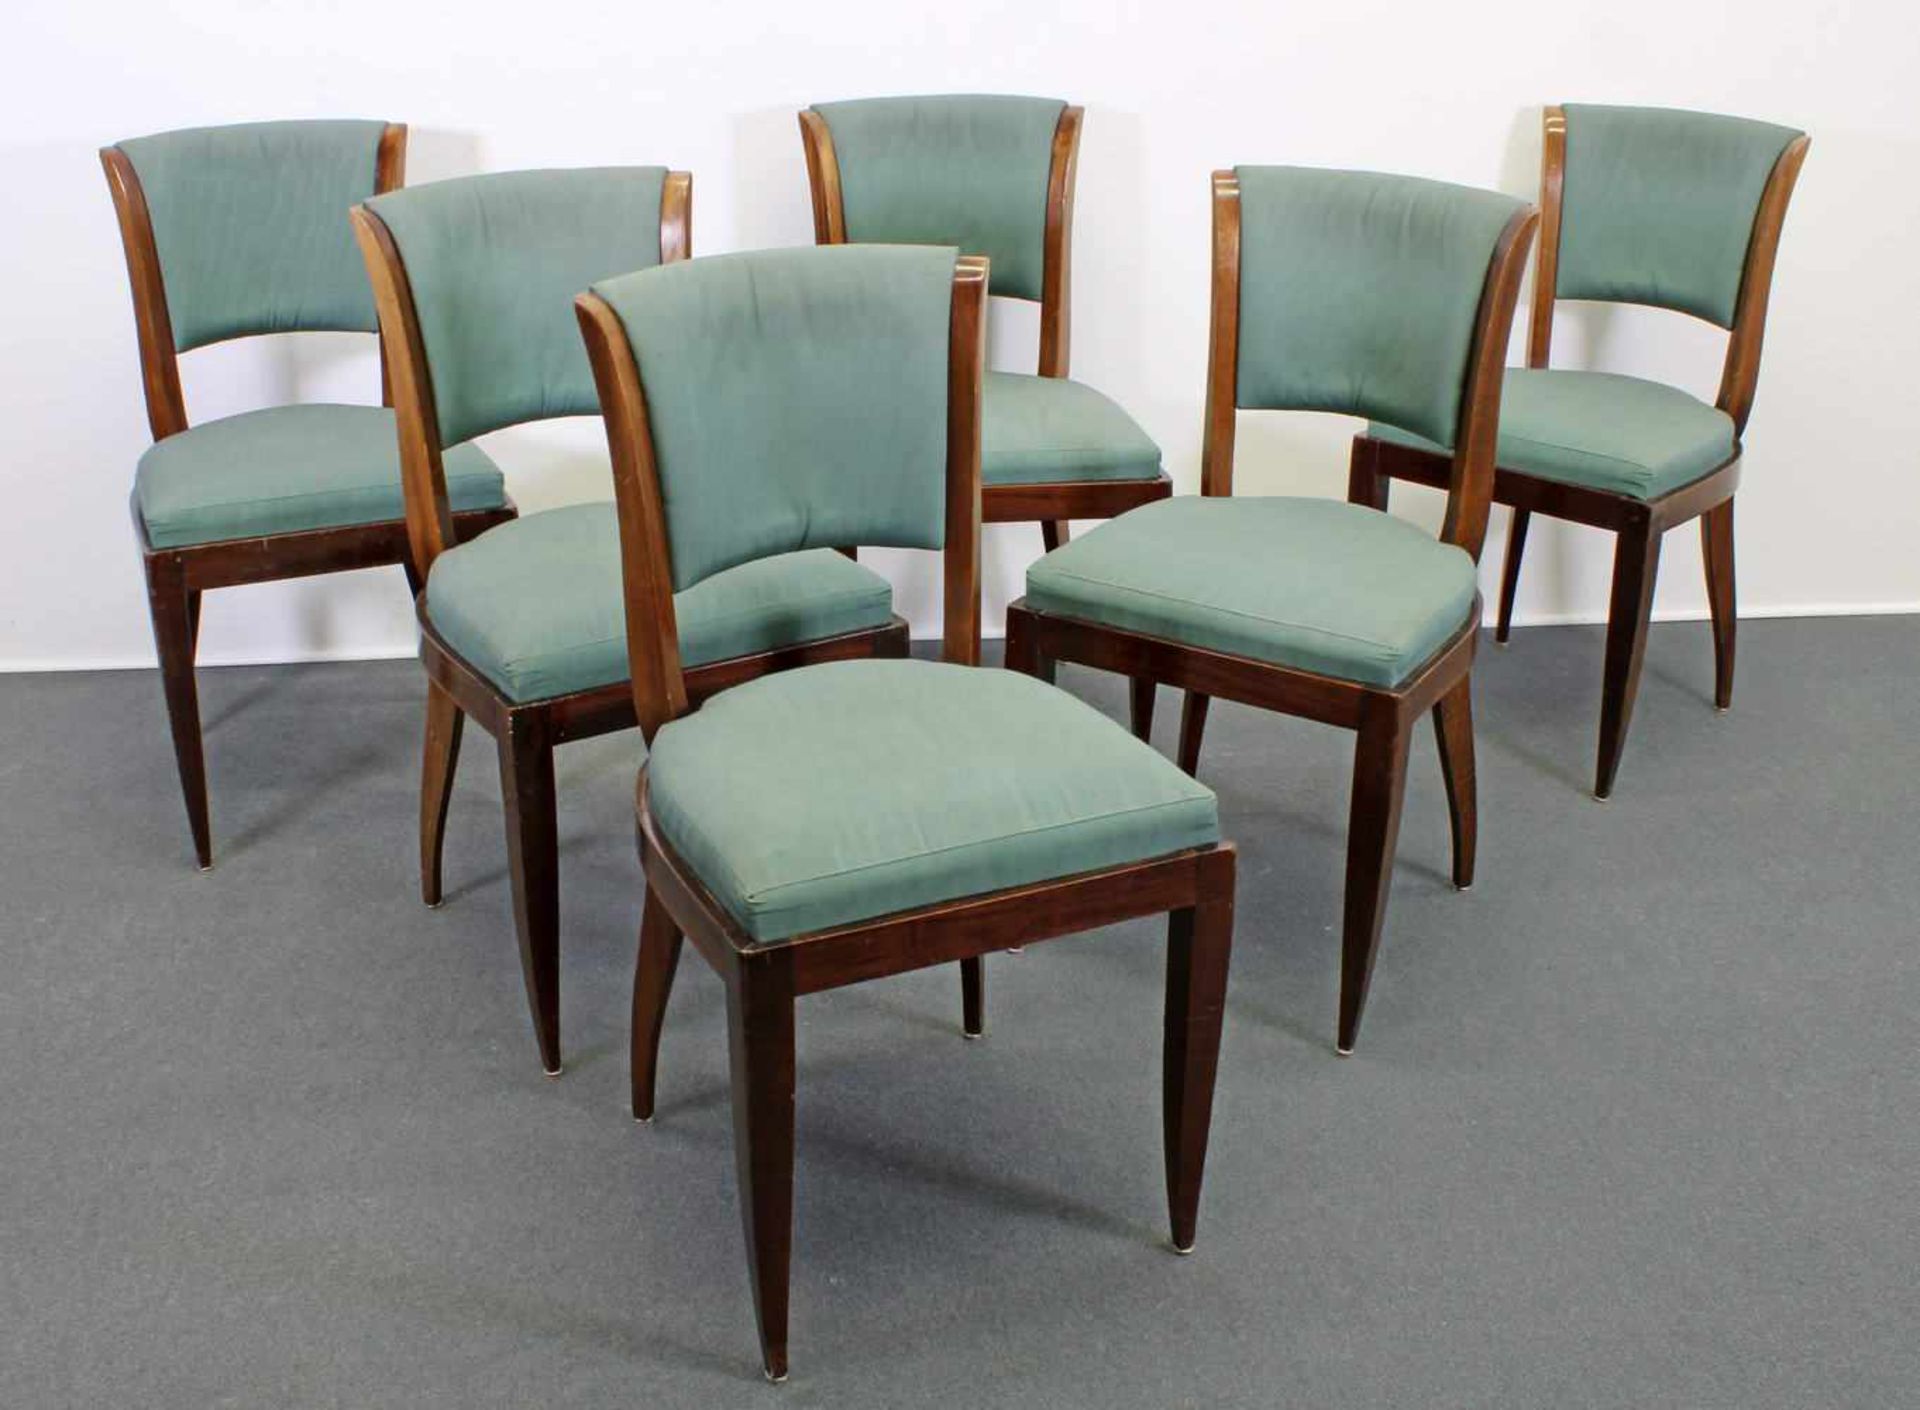 6 Stühle, Art Deco, Frankreich, um 1930, Mahagoni, Sitz- und Rückenpolster, teils leicht fleckig,